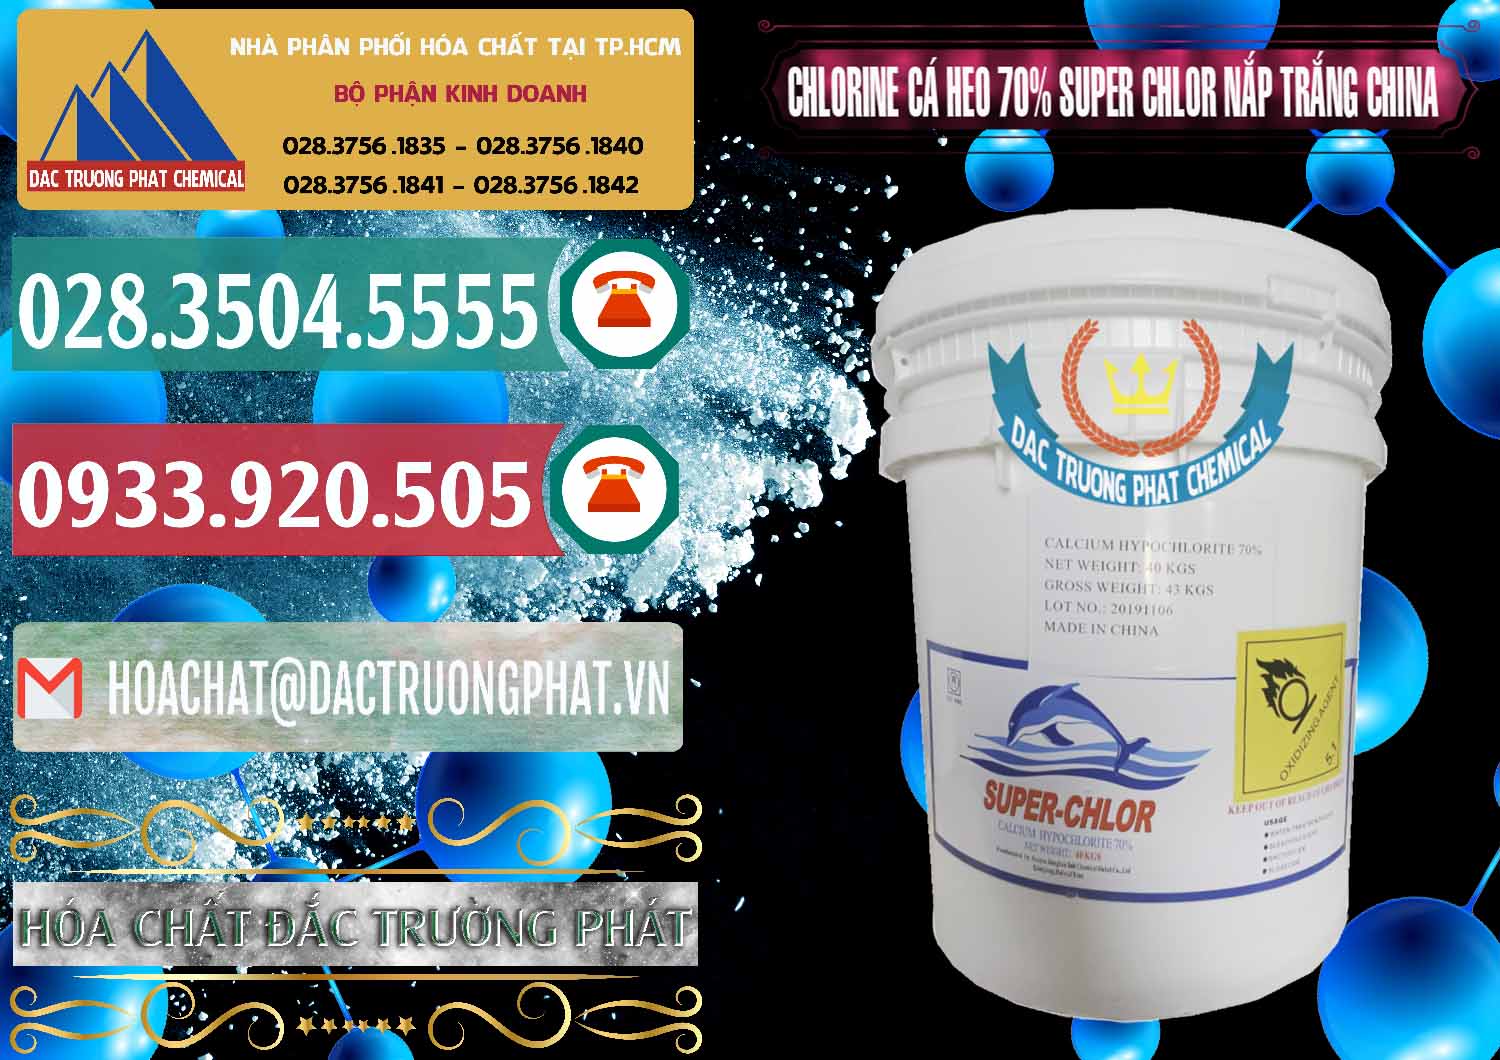 Nơi chuyên cung ứng ( bán ) Clorin - Chlorine Cá Heo 70% Super Chlor Nắp Trắng Trung Quốc China - 0240 - Cty cung cấp và bán hóa chất tại TP.HCM - muabanhoachat.vn